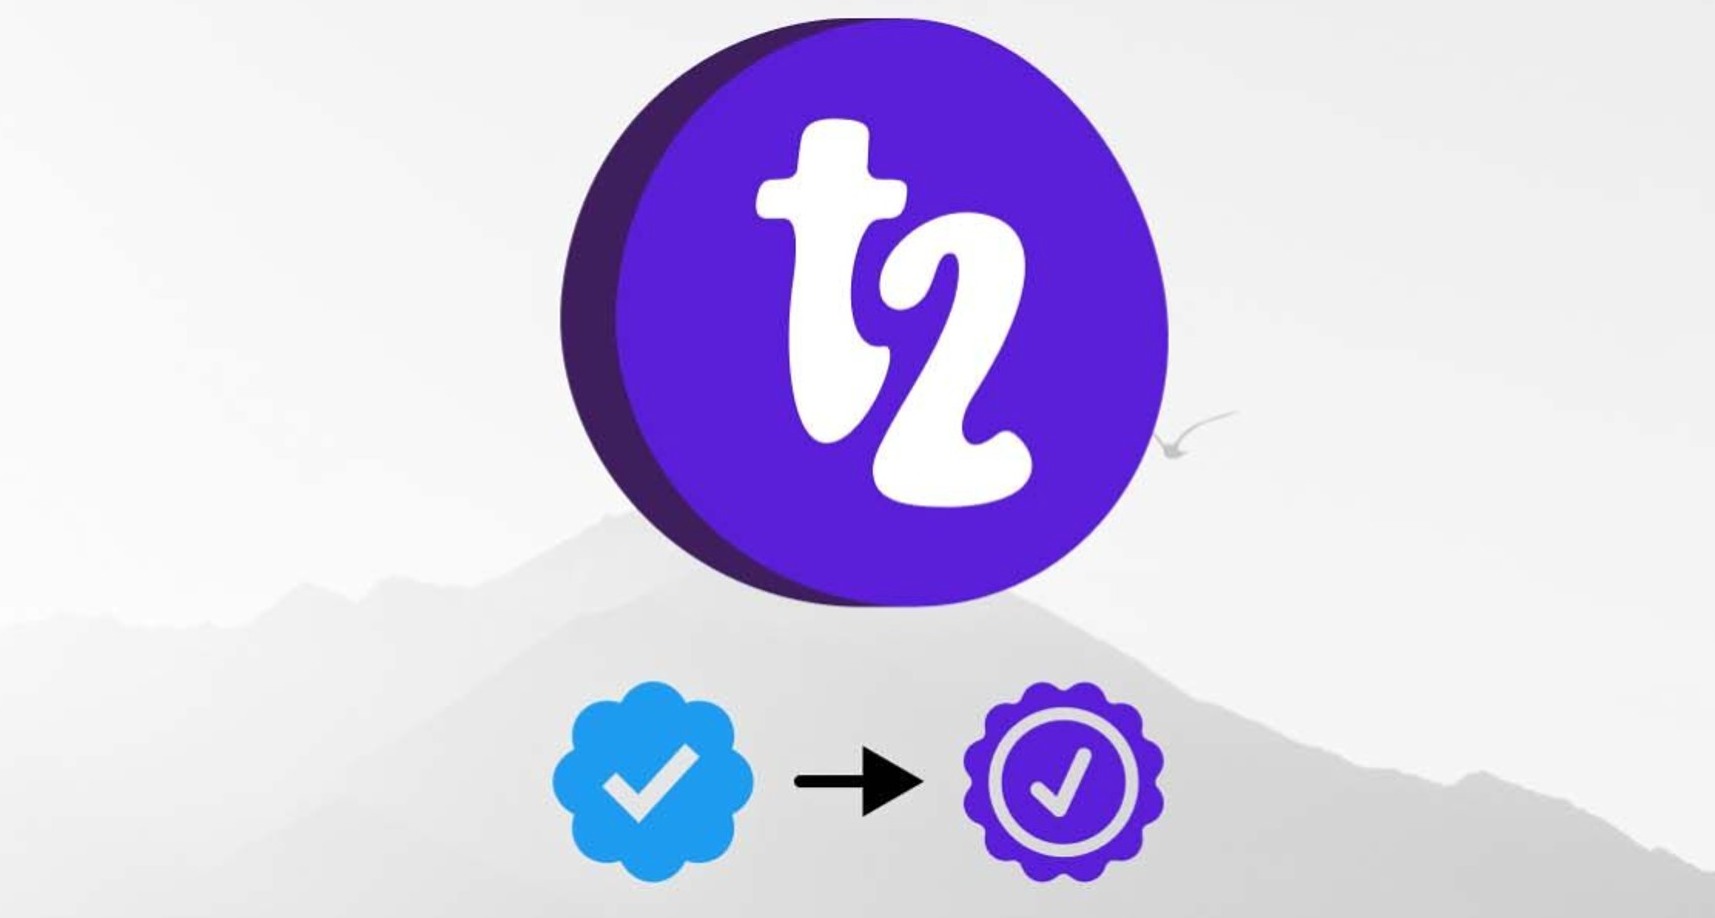 T2, alternativa a Twitter, conservará la verificación de los usuarios que pierdan el check azul en la red de microblogging